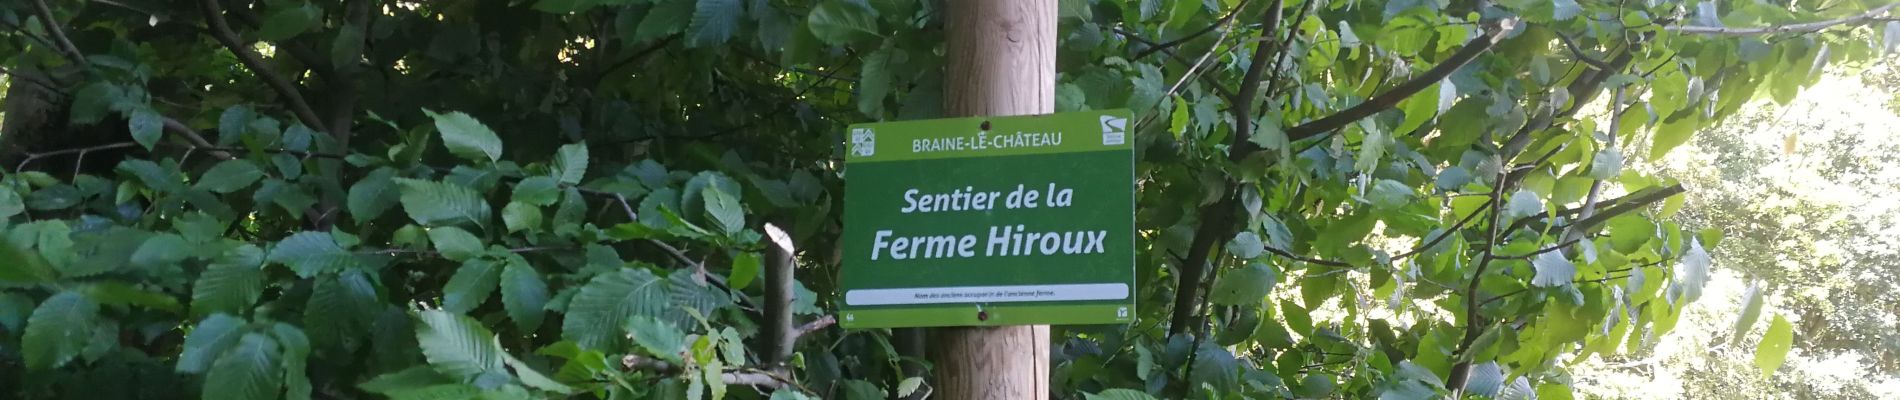 Point of interest Ittre - Sentier de la ferme Hiroux (affichage Braine-Le-Château) - Photo